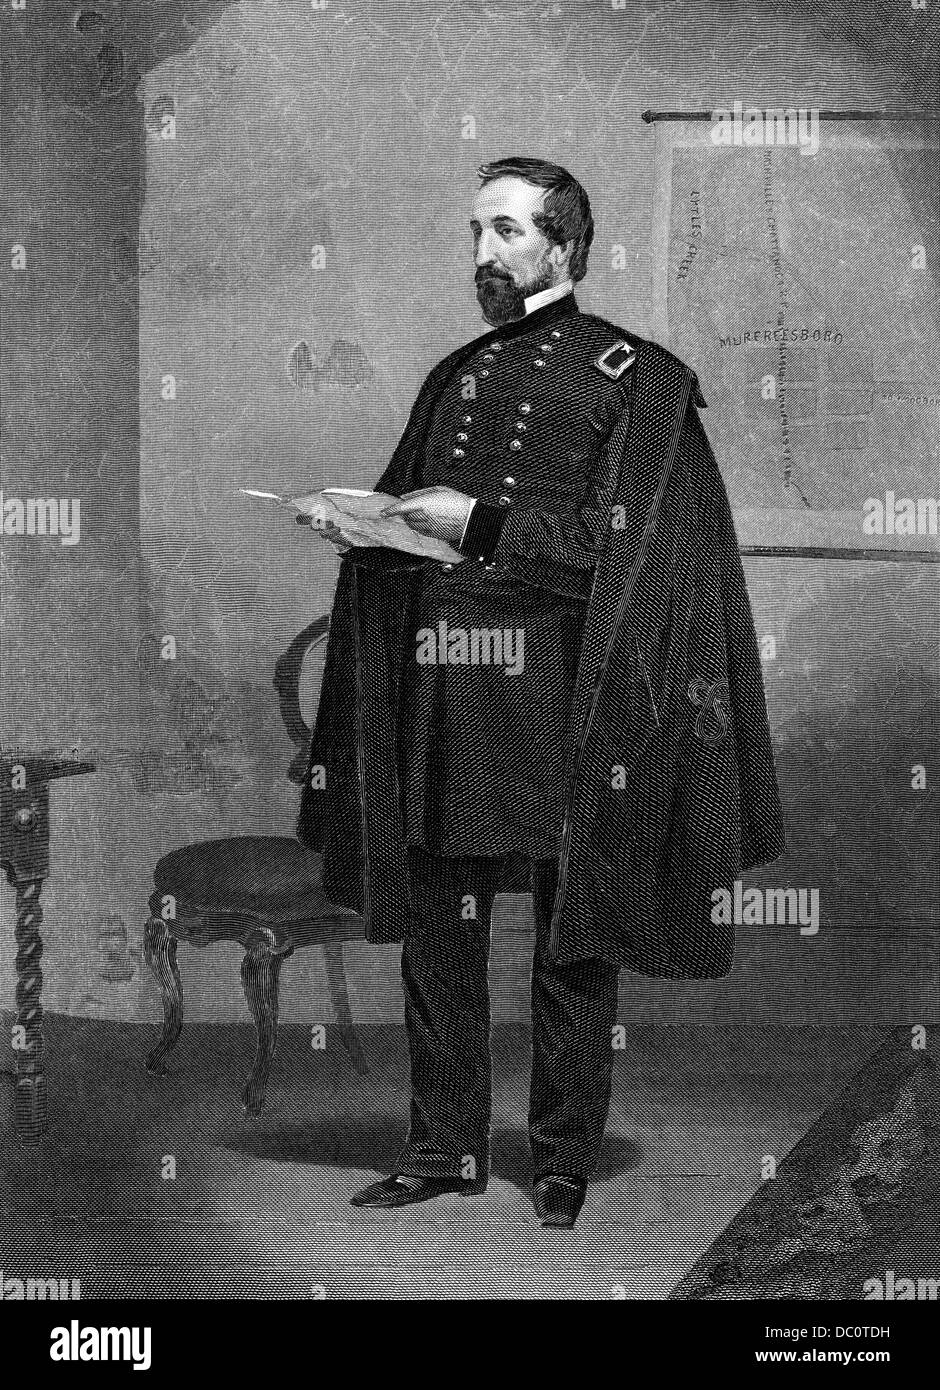 1800s 1860s PORTRAIT WILLIAM STARKE ROSECRANS GÉNÉRAL DE L'UNION PENDANT LA GUERRE CIVILE AMÉRICAINE Banque D'Images